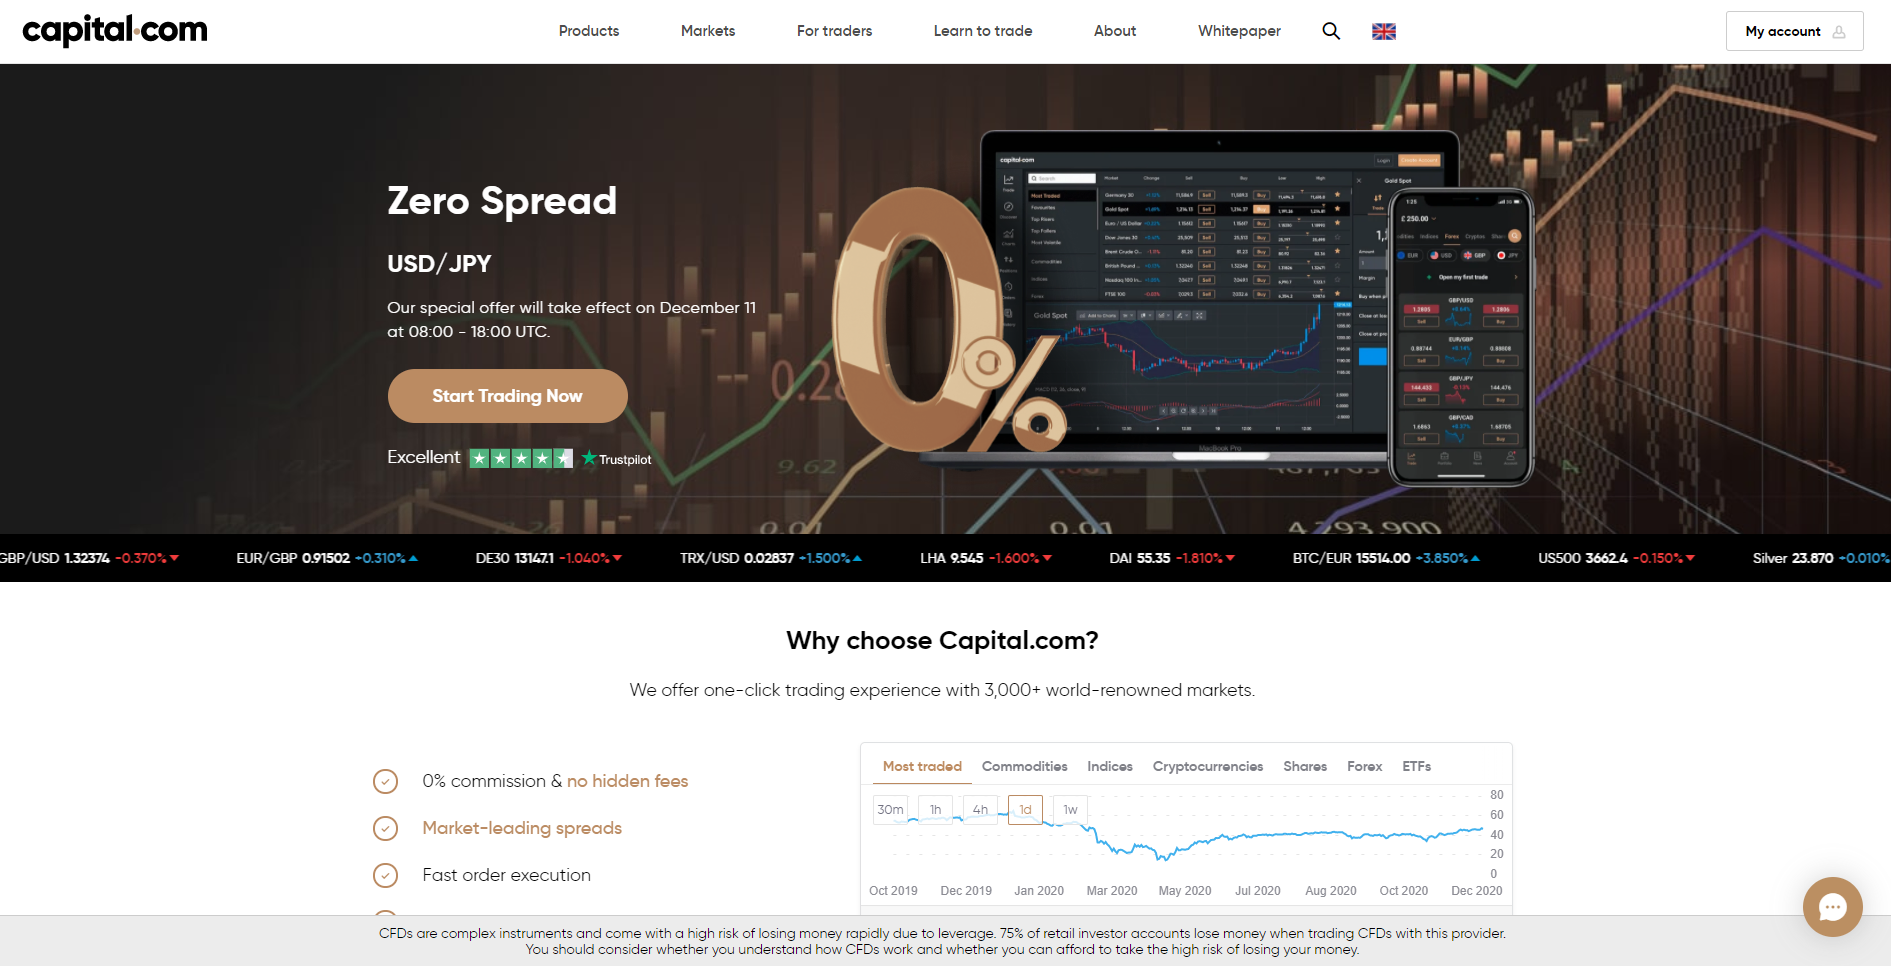 Forex brokeri Capital.com'nin resmi web sitesi